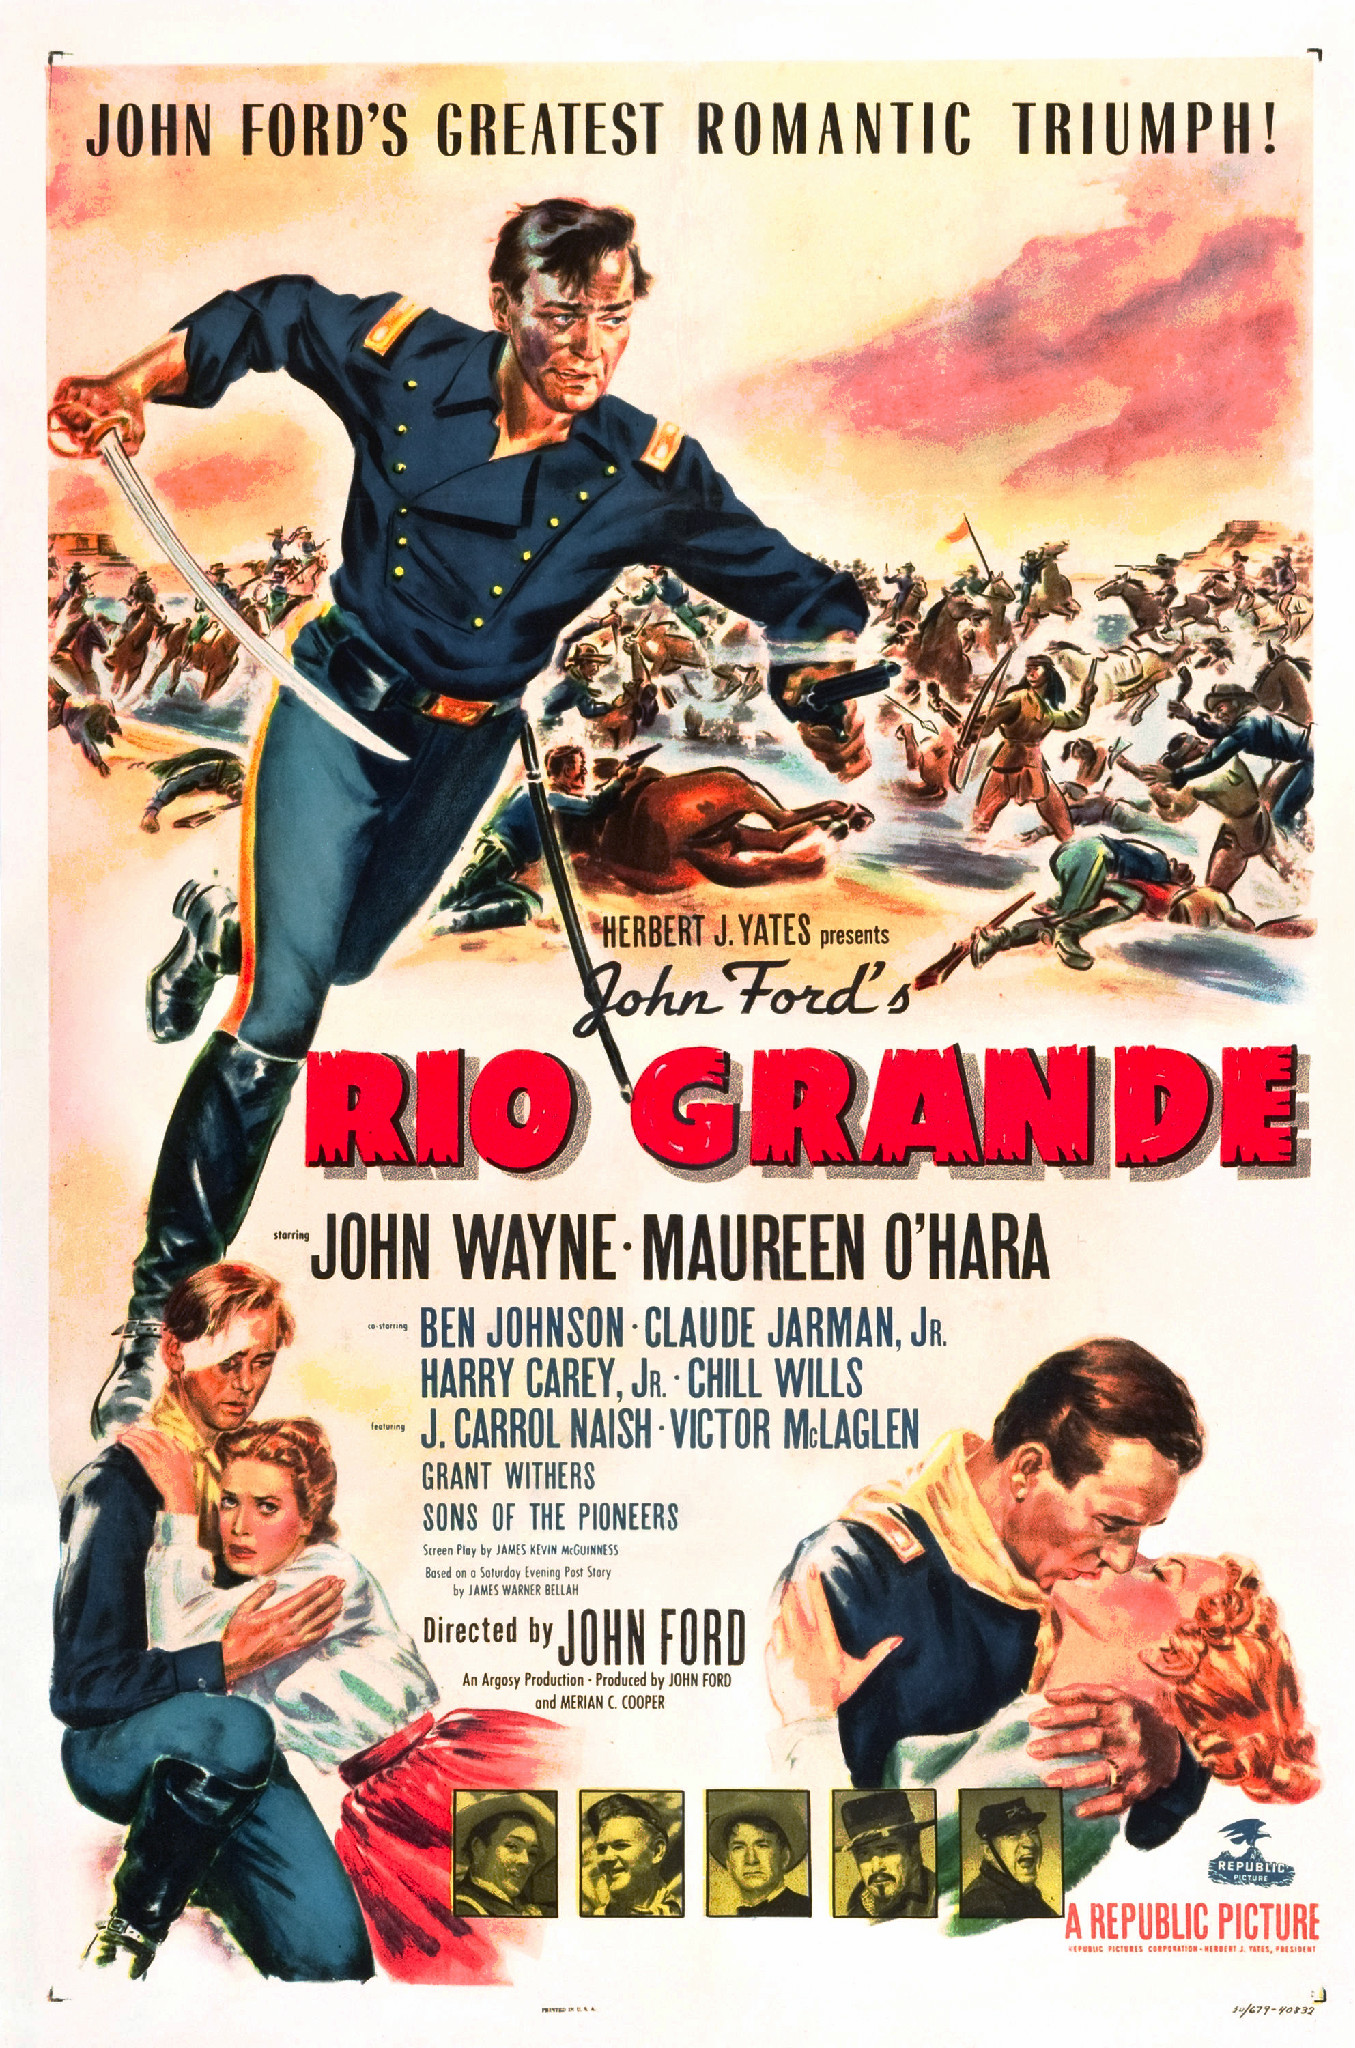 Stiahni si Filmy CZ/SK dabing Rio Grande (1950)(CZ)[TvRip][1080p] = CSFD 65%